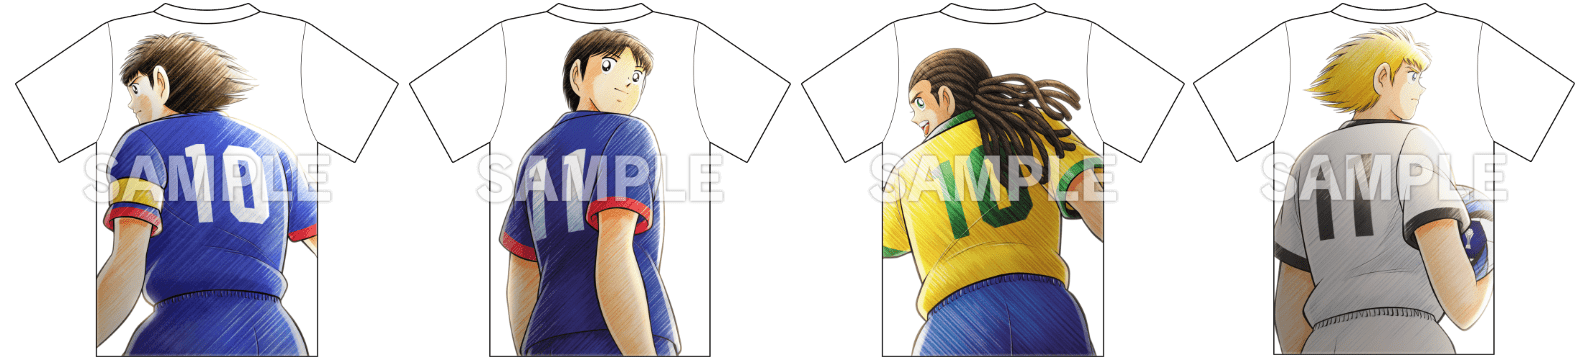 Tshirt sets